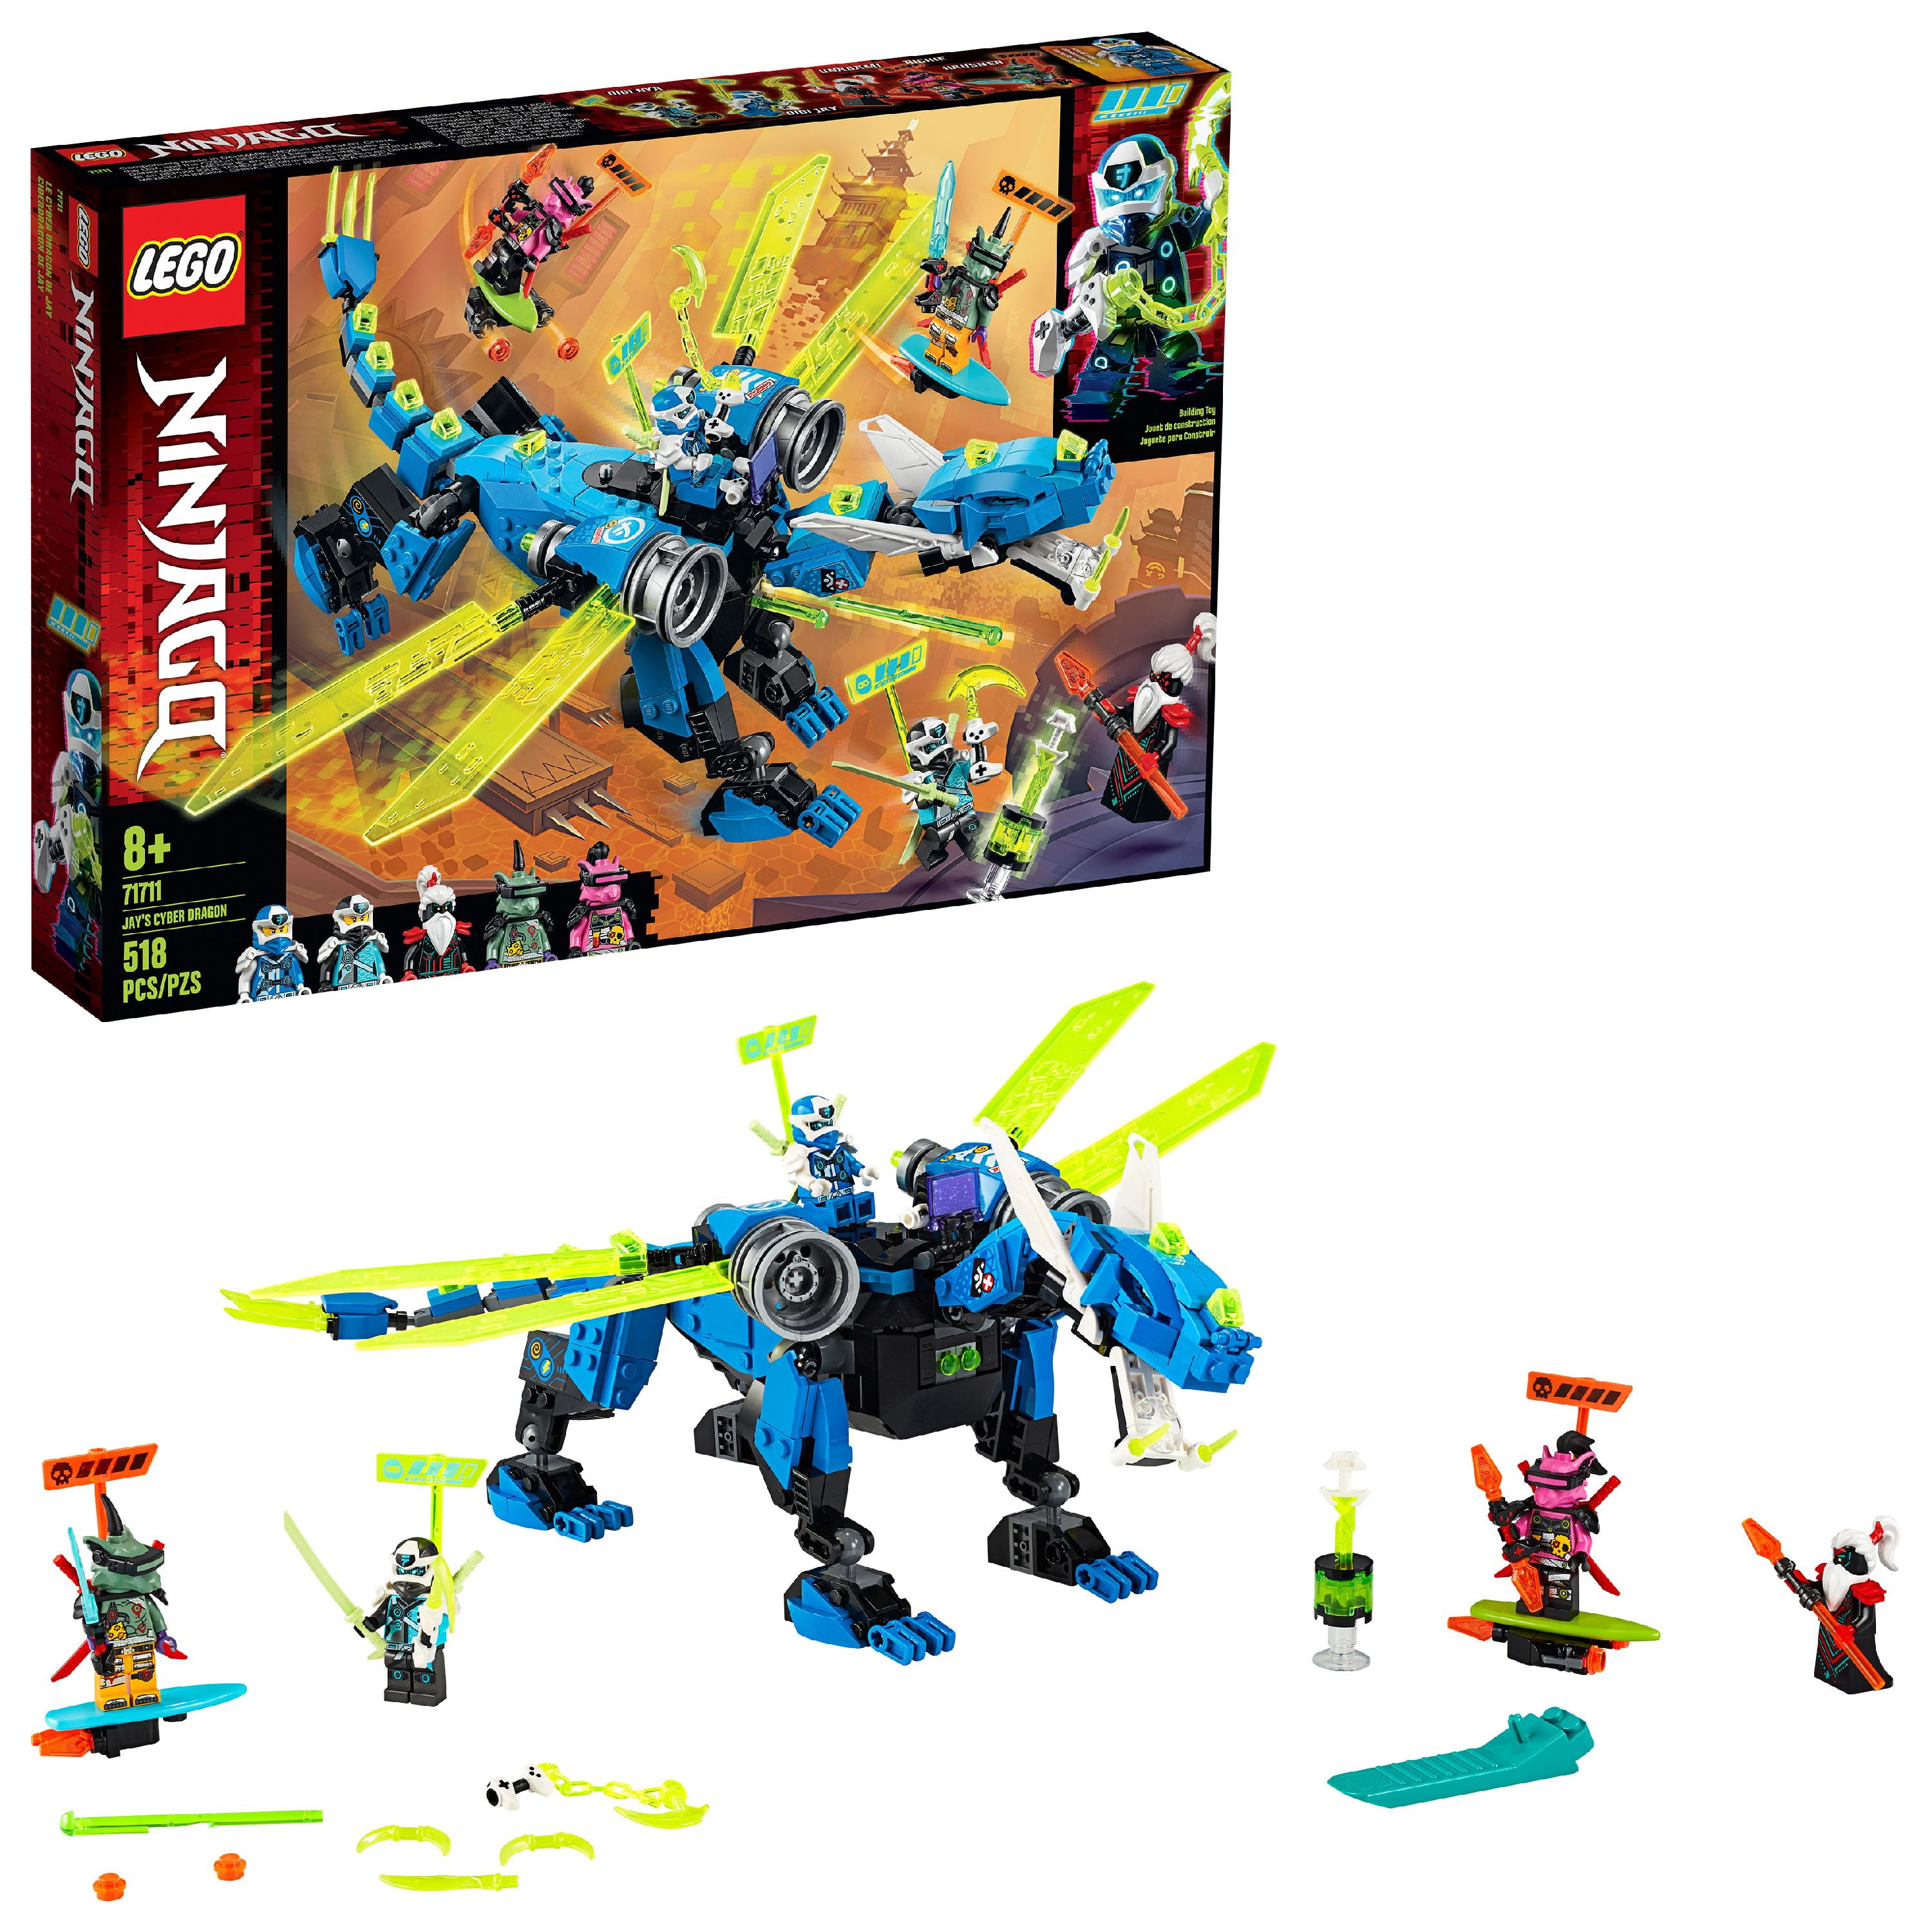 Minifigura-Set 70666 Nuevo heredada Lego Ninjago Overlord rápido y gastos de envío gratis 